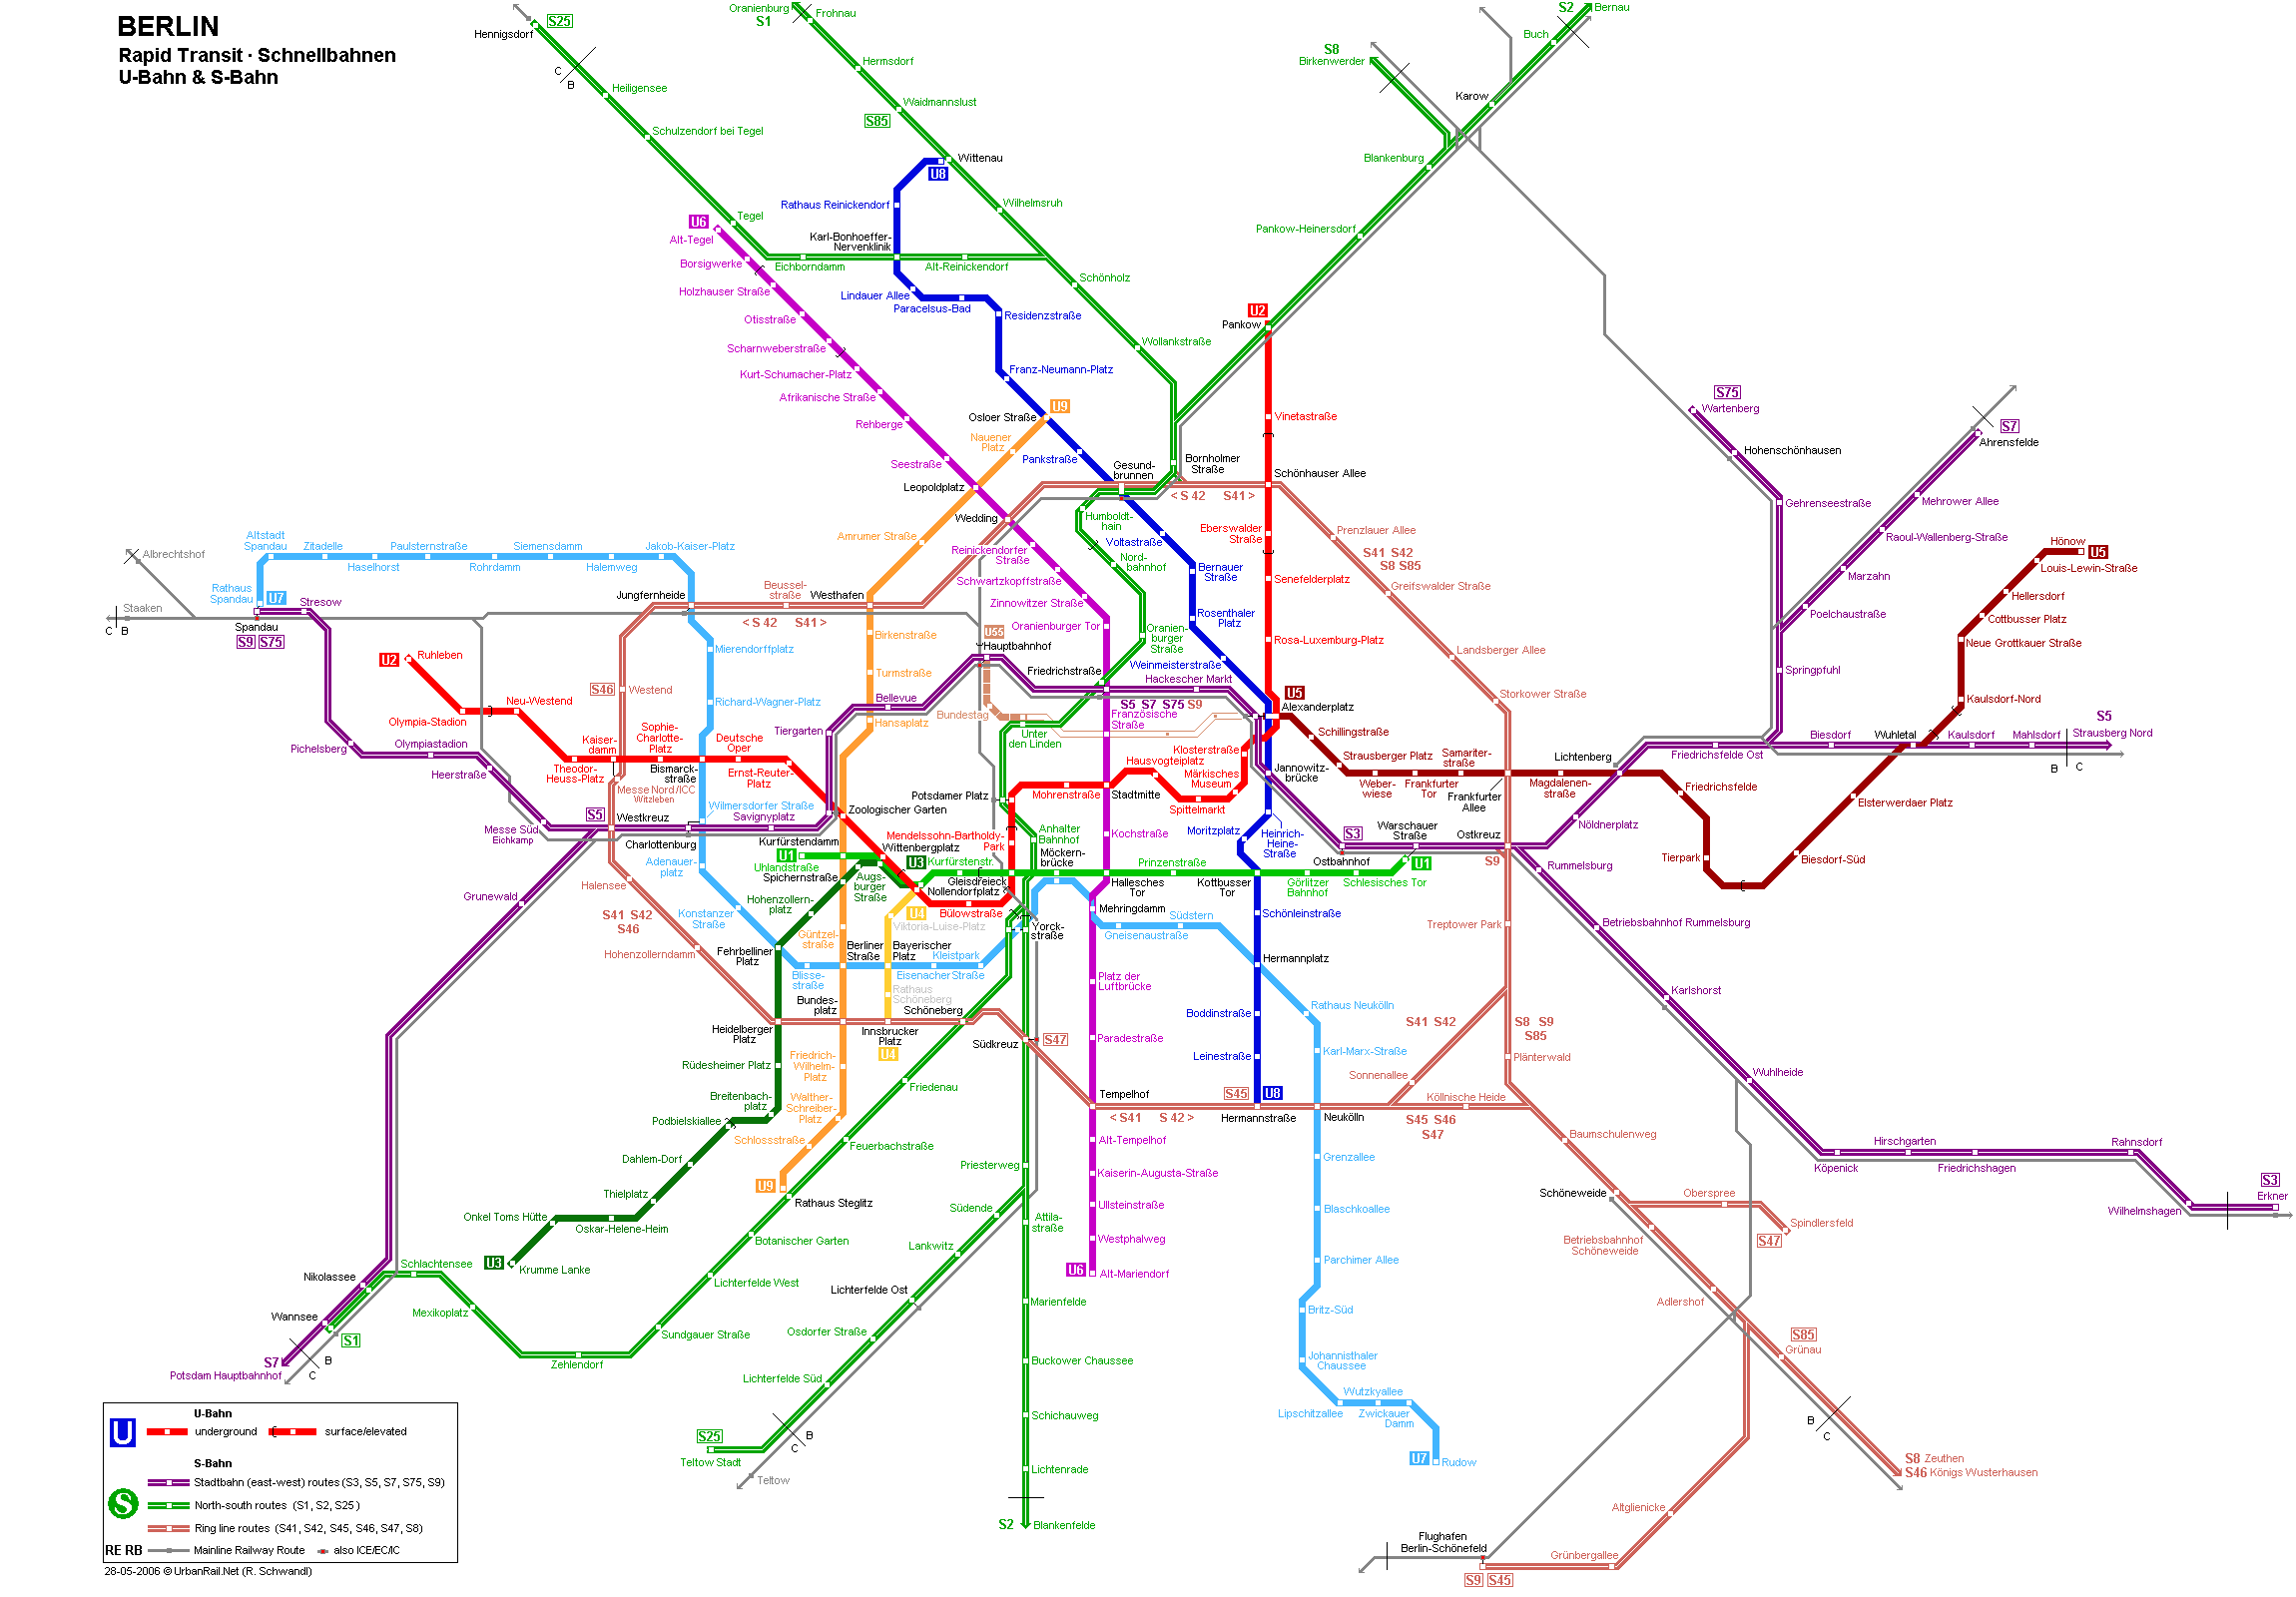 budapest metró térkép nyomtatható Berlin térkép, Berlin látnivalóinak és nevezetességeinek térképe  budapest metró térkép nyomtatható